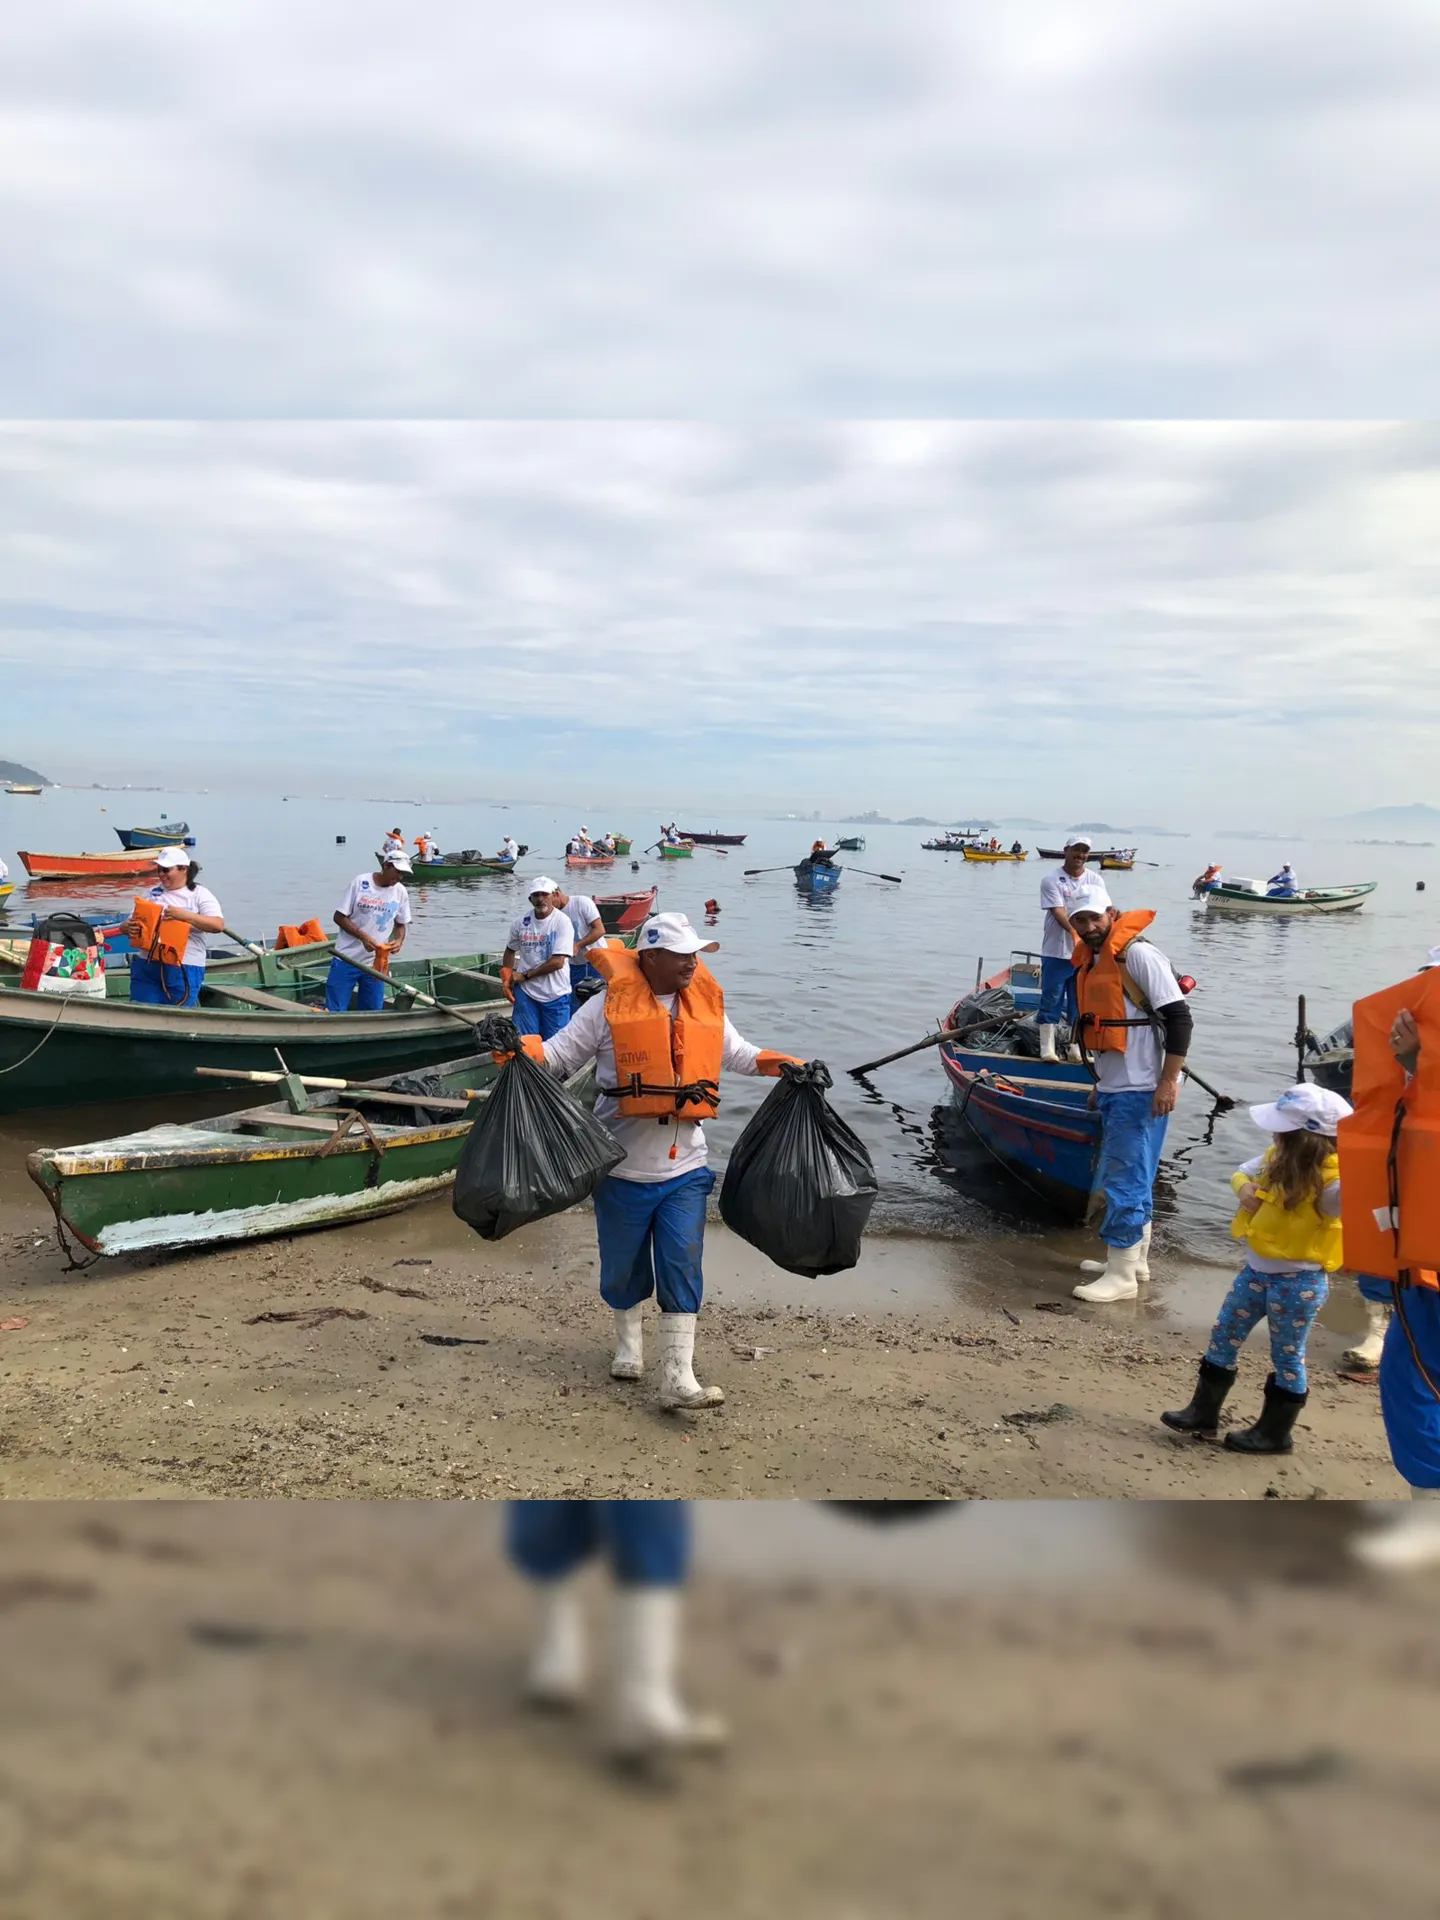 O projeto “Águas da Guanabara”, está sendo realizado, para analisar as condições territoriais, ambientais e econômicas